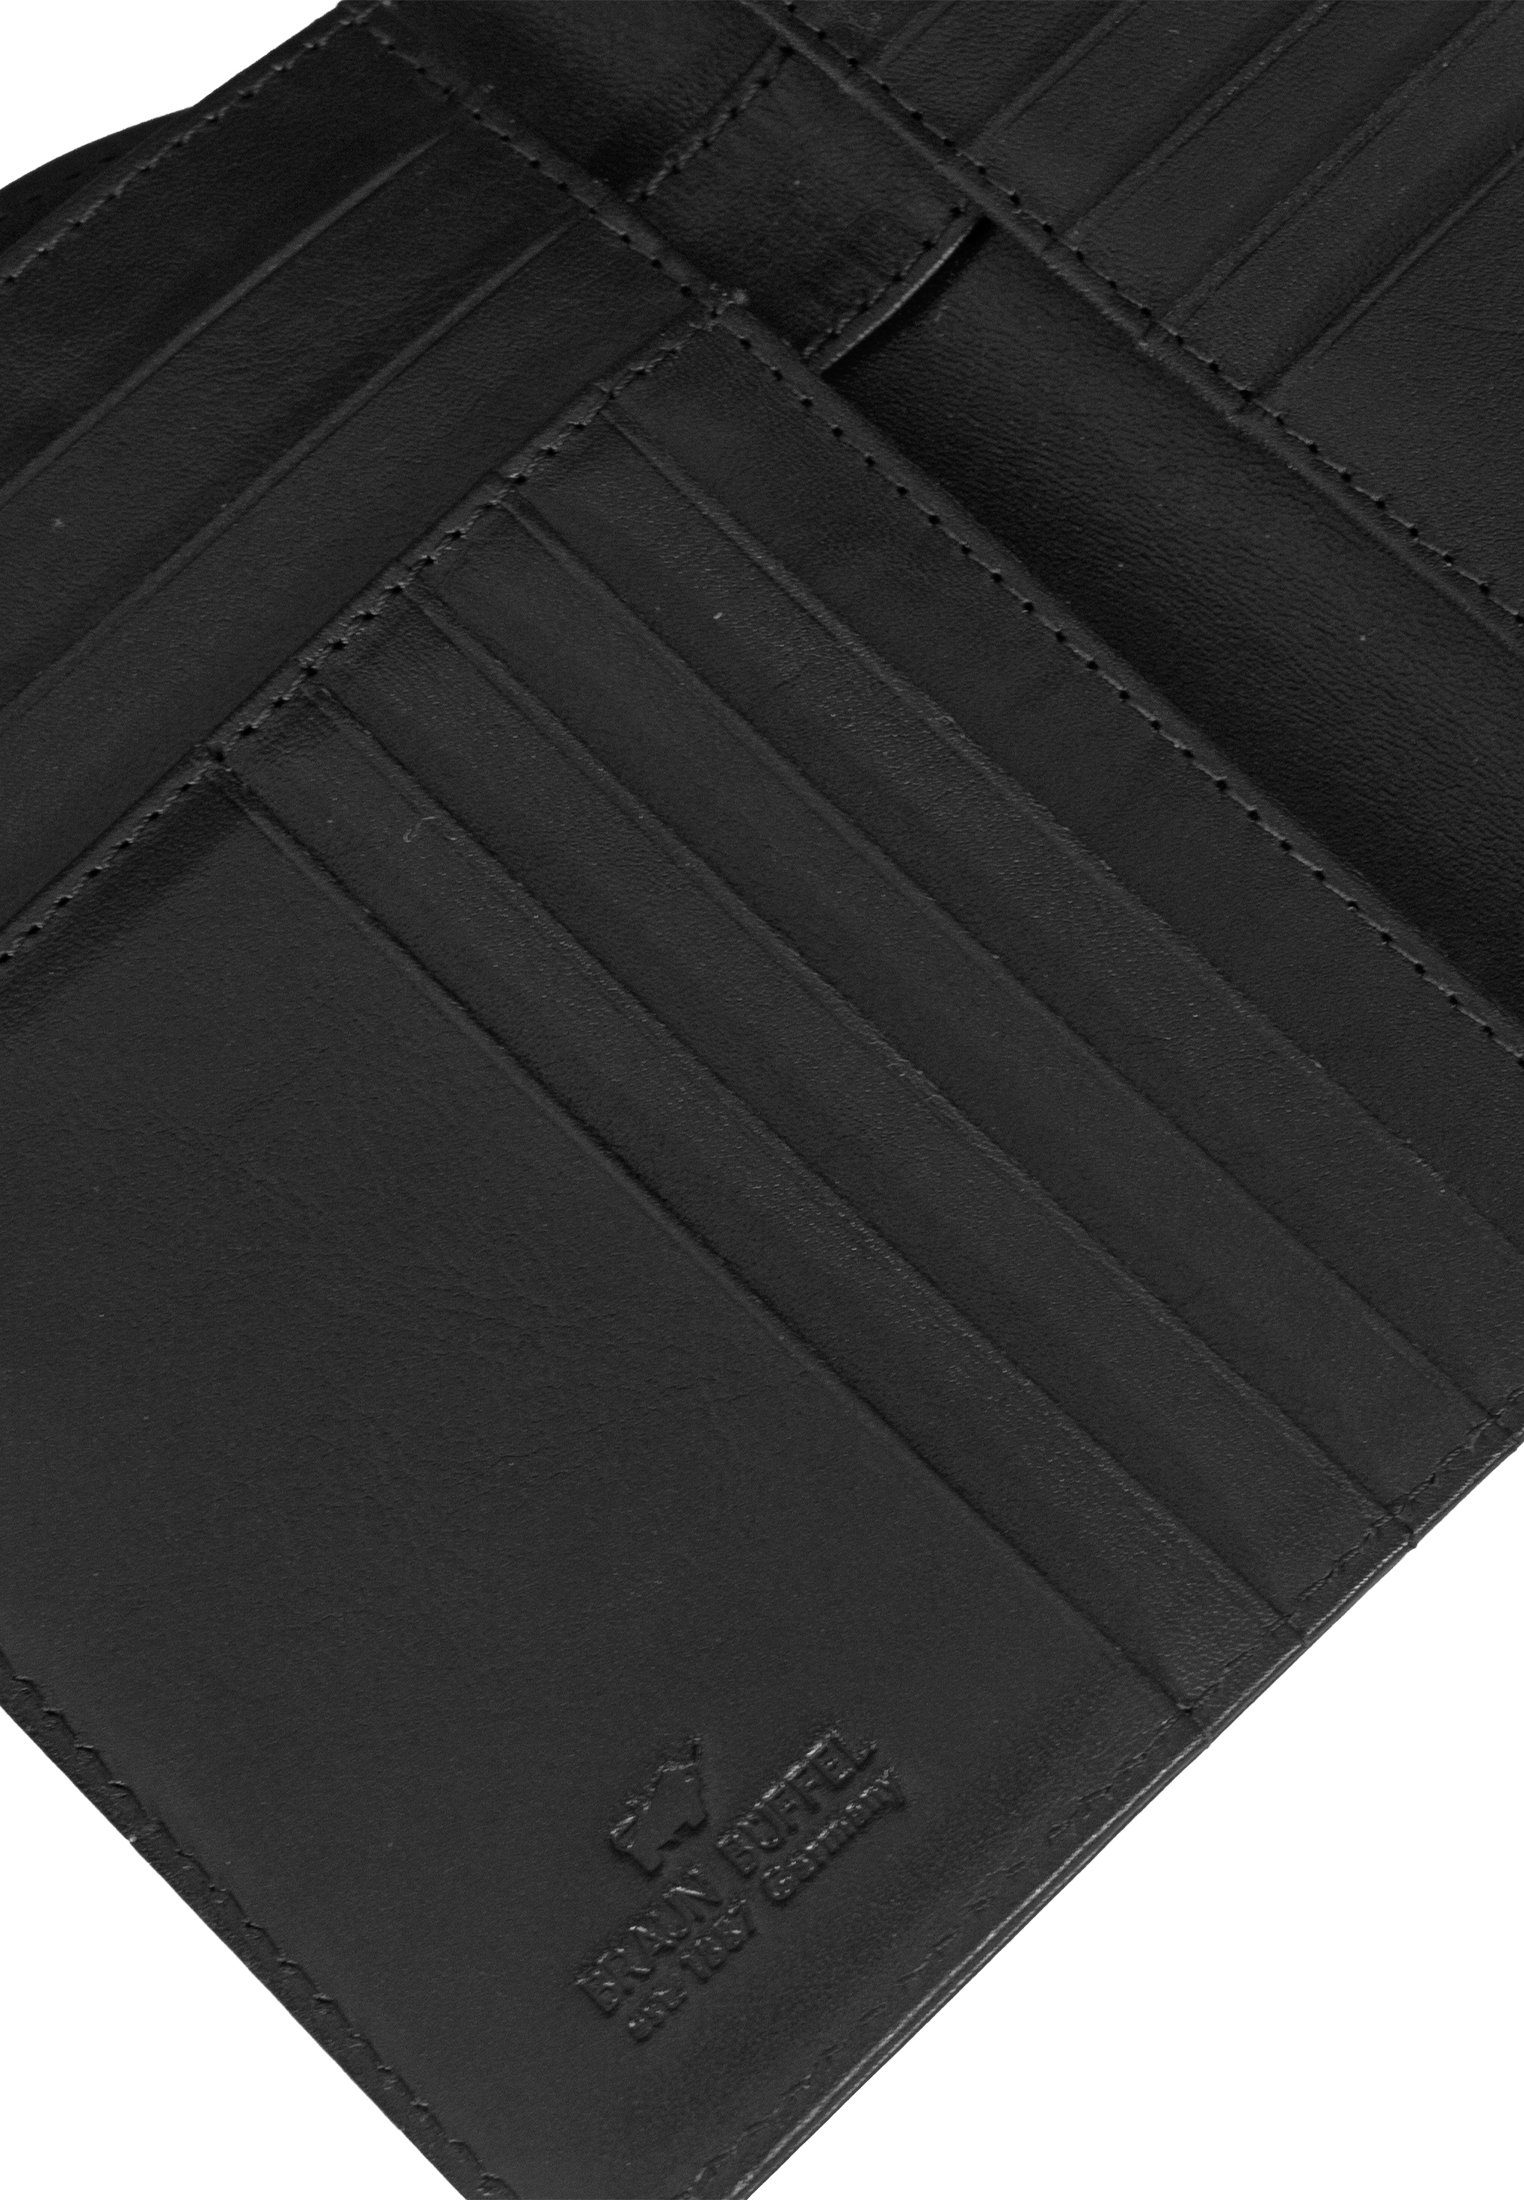 Braun Büffel Brieftasche COUNTRY RFID Brieftasche, mit Stiftehalter schwarz